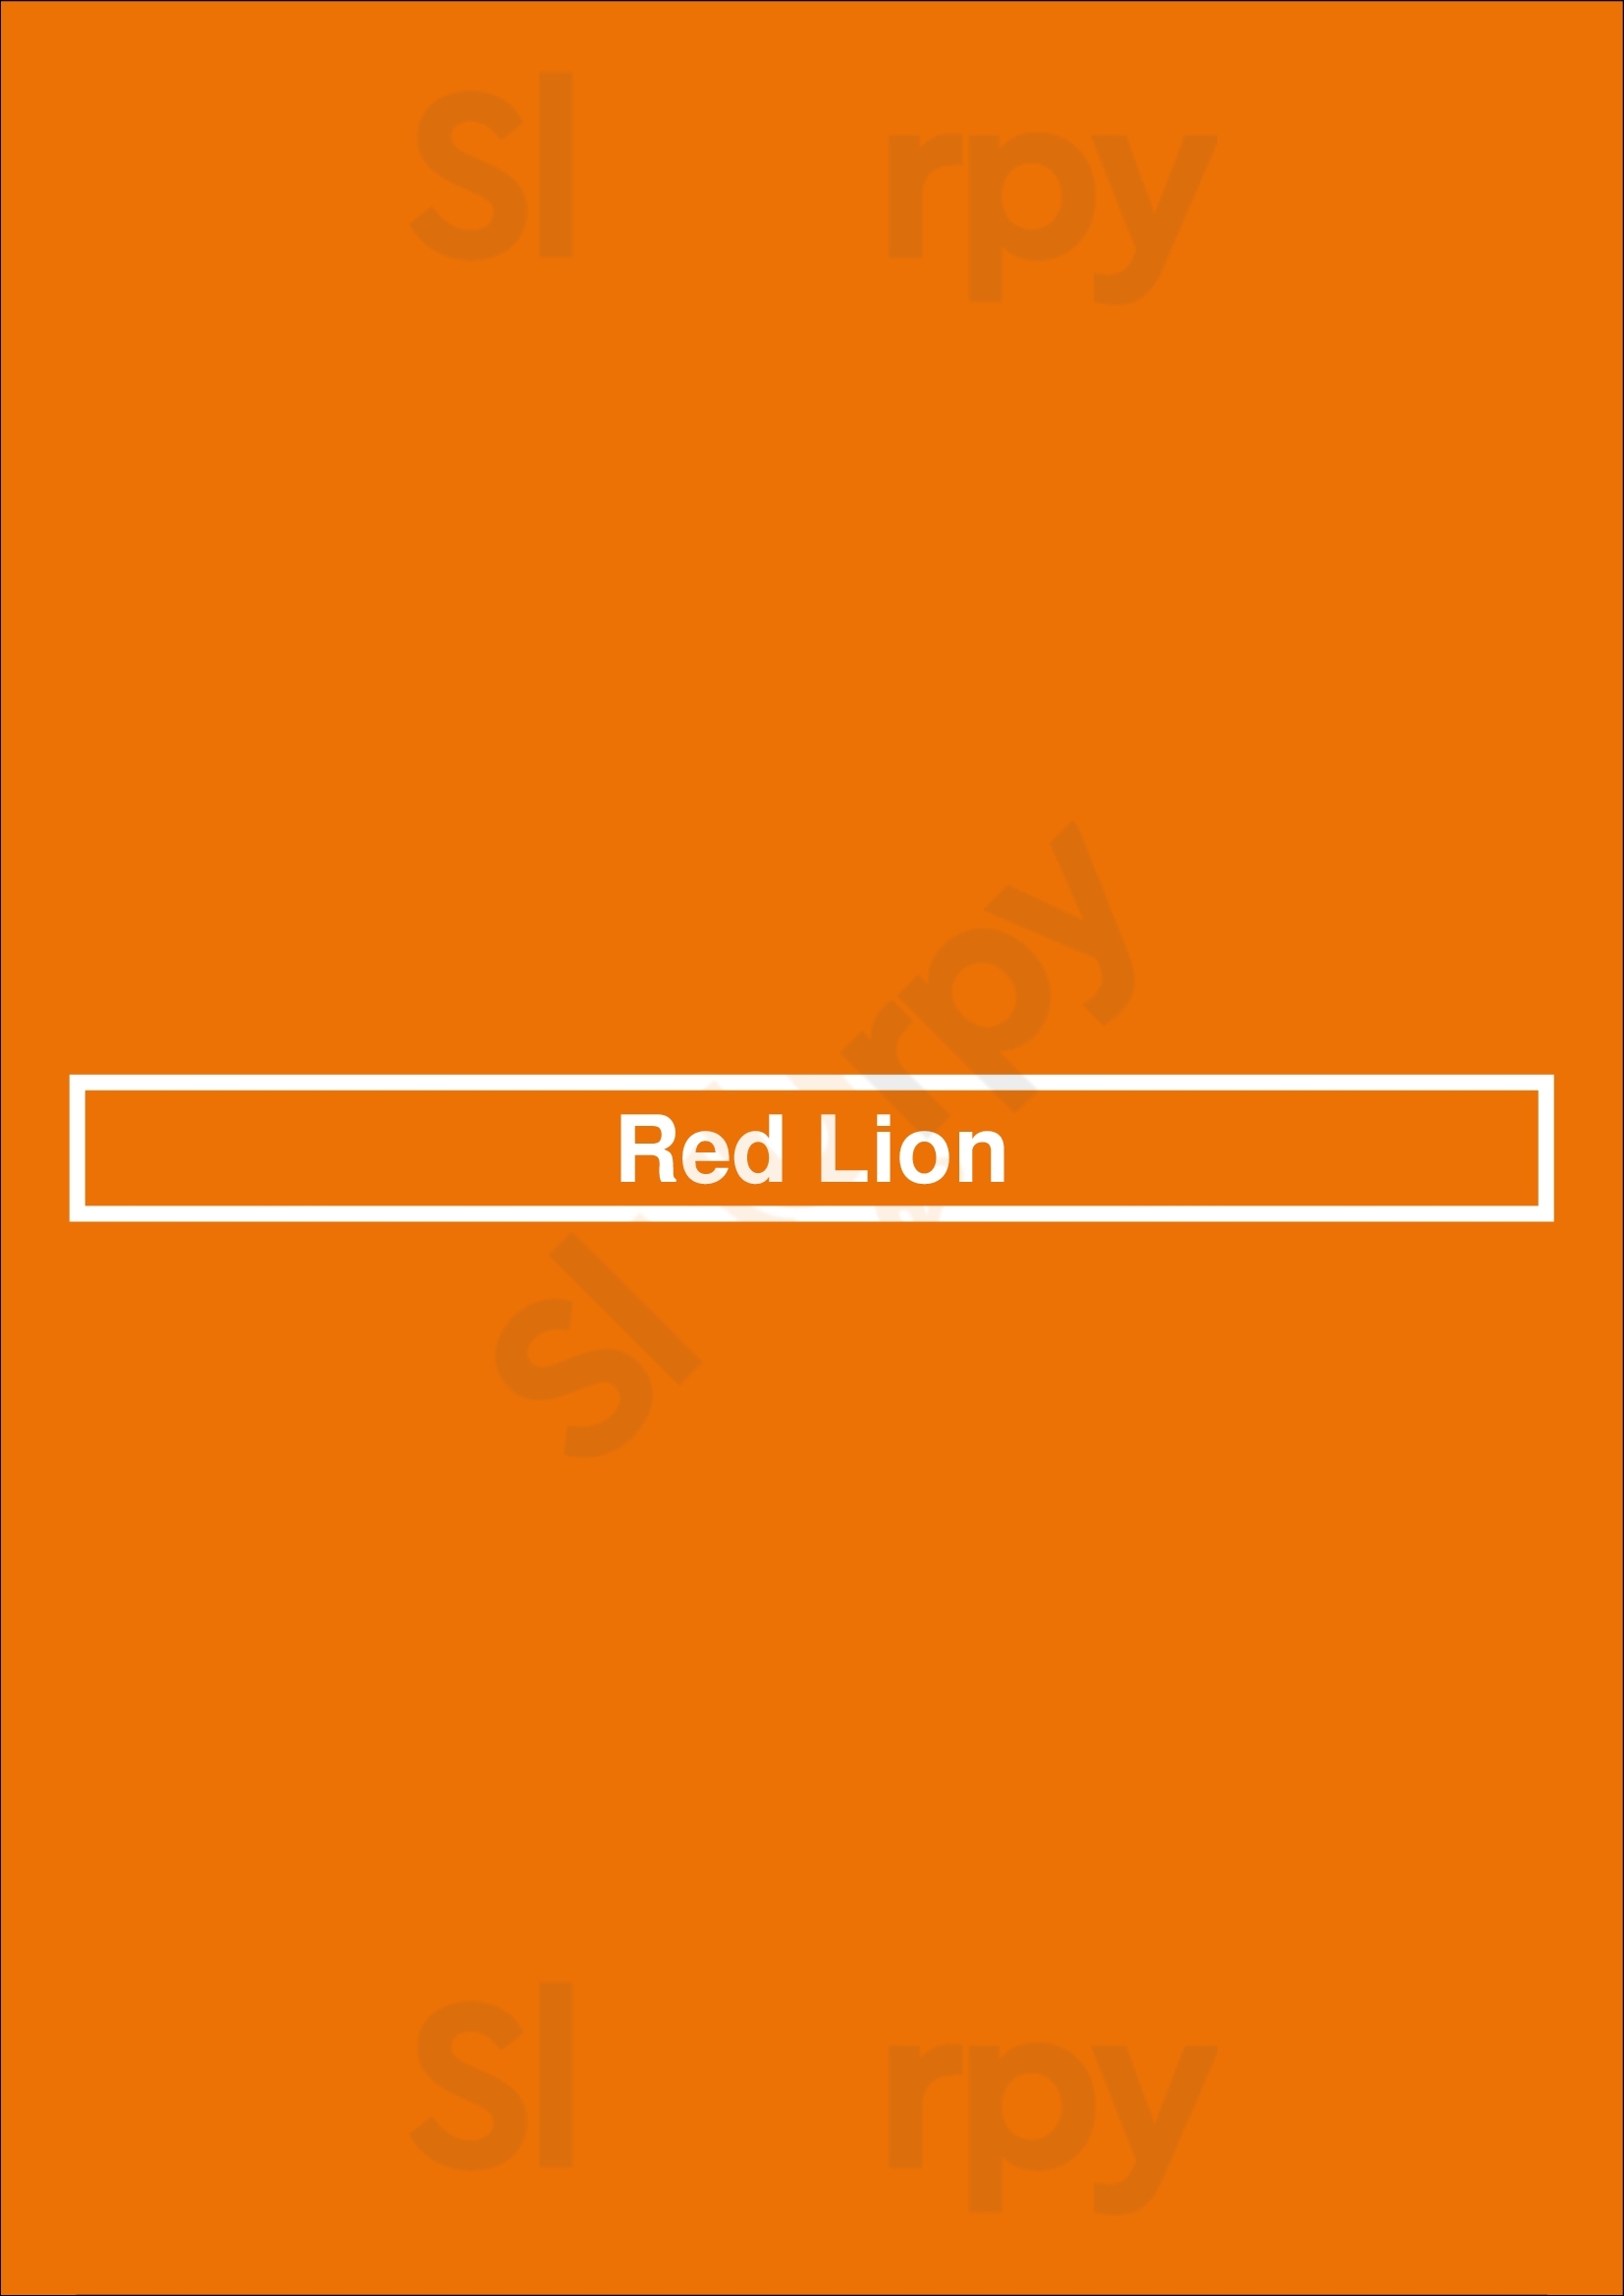 Red Lion Madeira Menu - 1